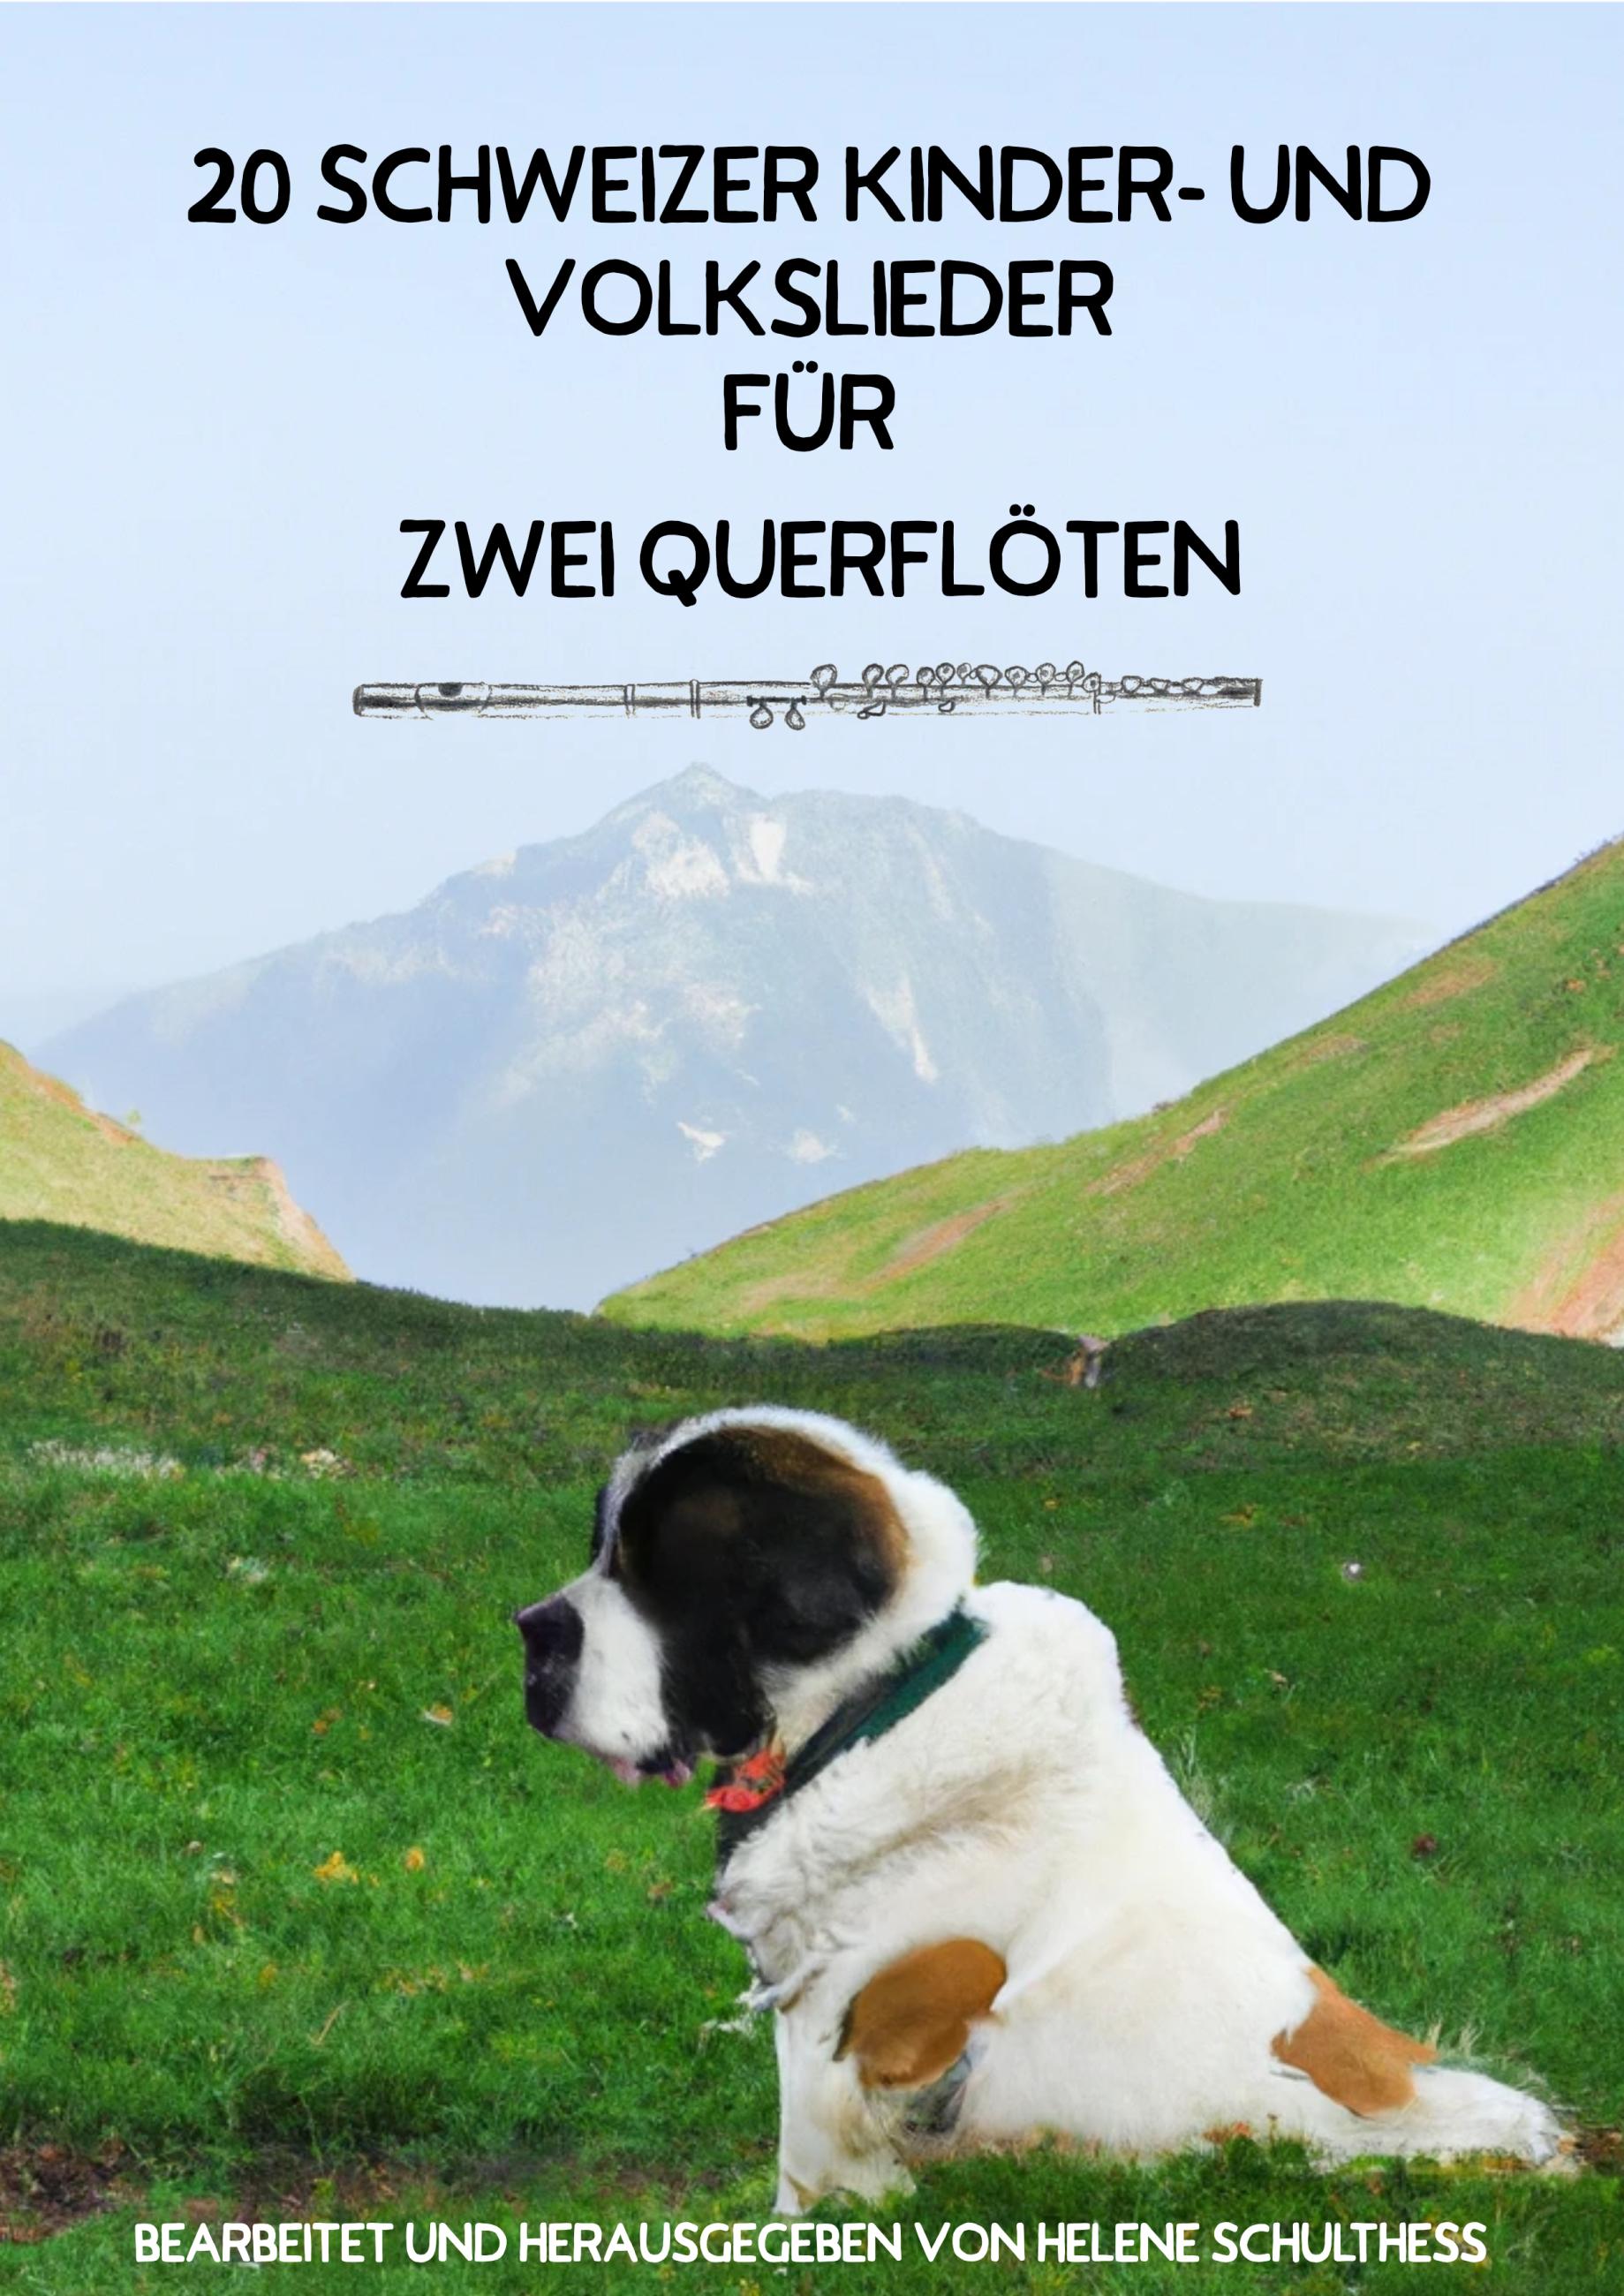 20 Schweizer Kinder- und Volkslieder für zwei Querflöten